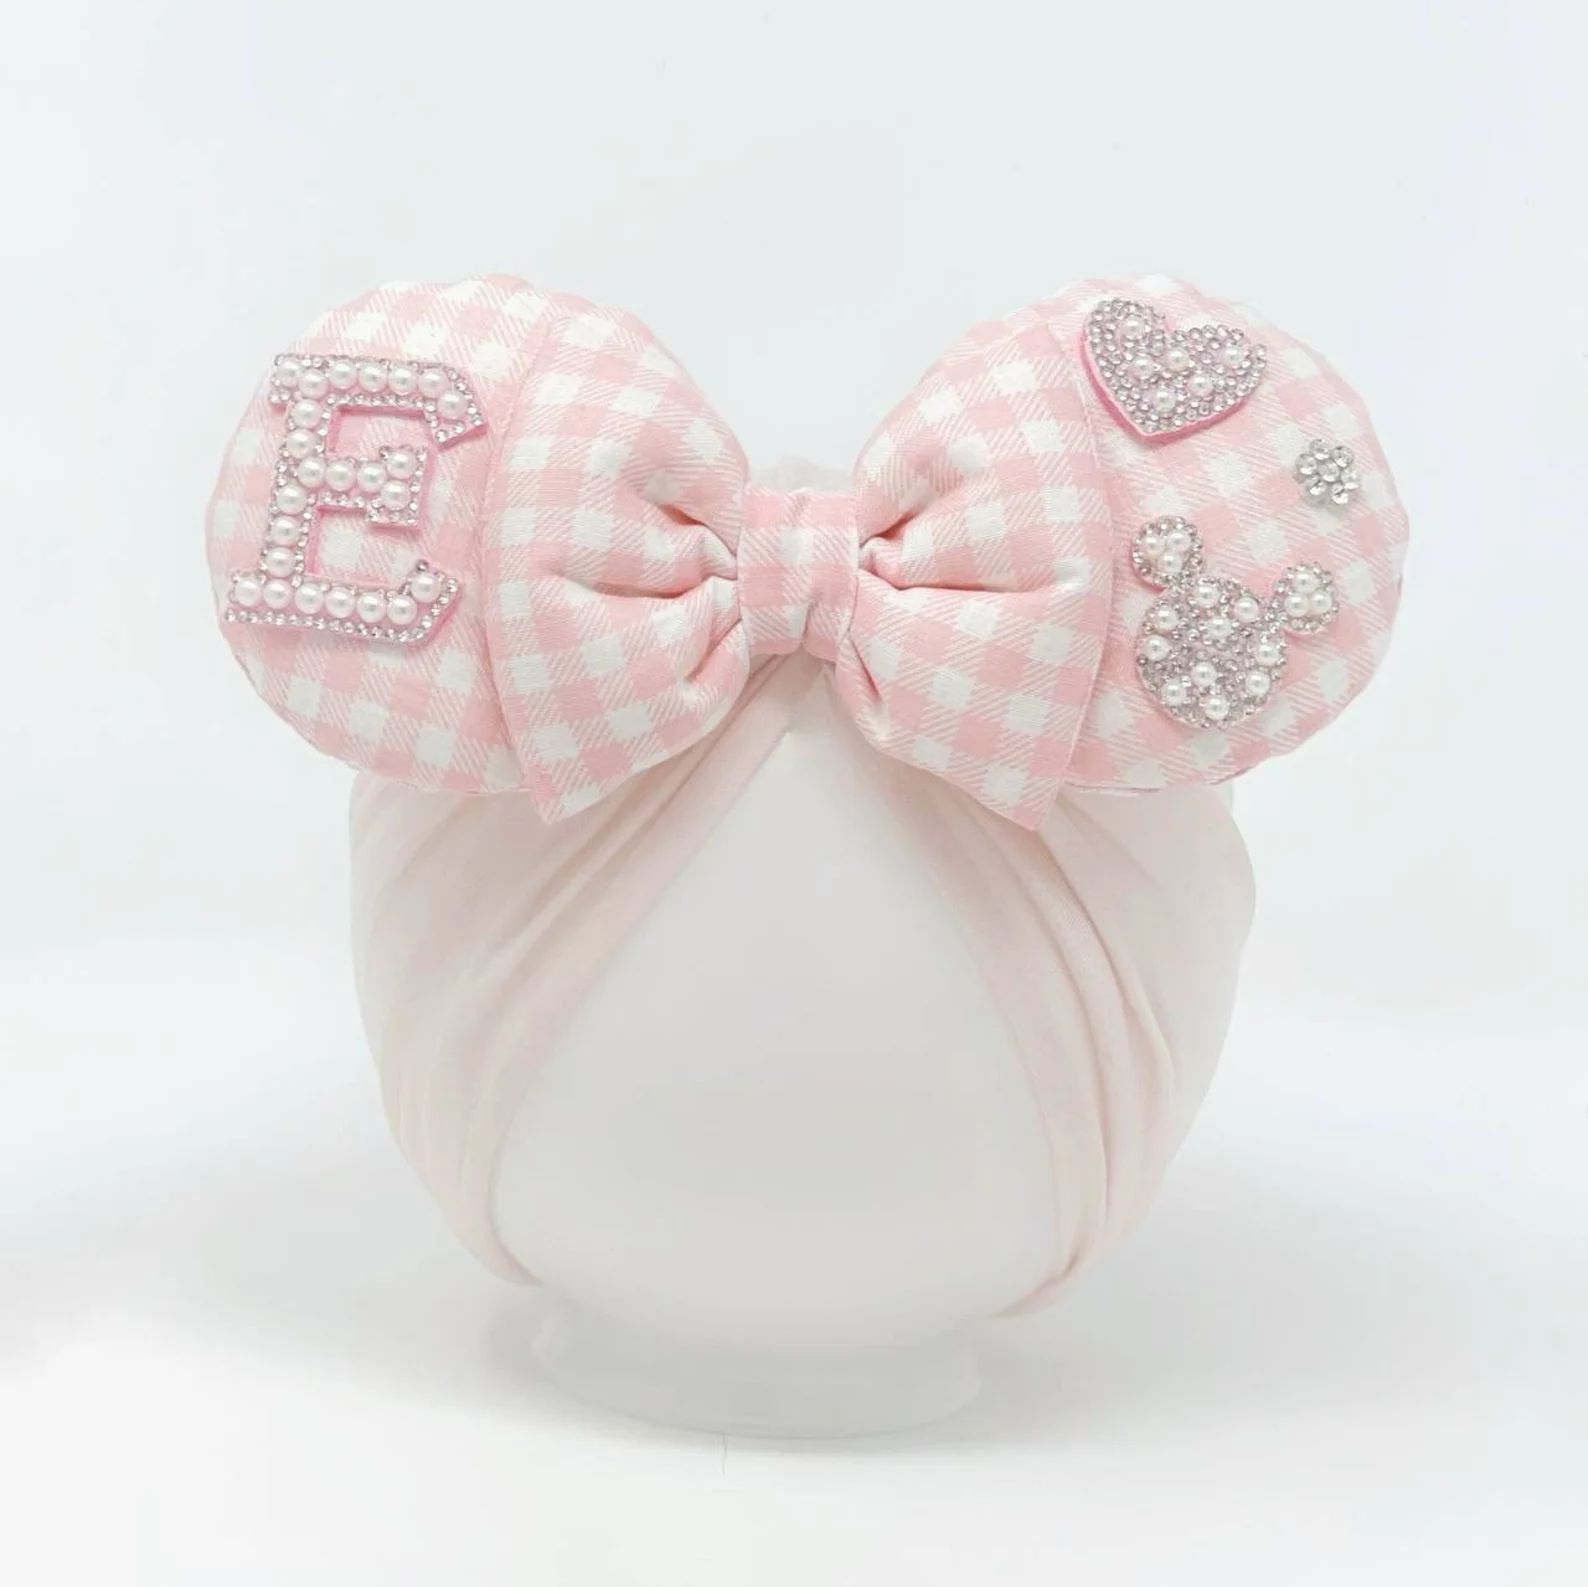 Disney Love Custom || Minnie Ears || Ears for babies || Disney Parks Head accessory Active | Etsy (US)